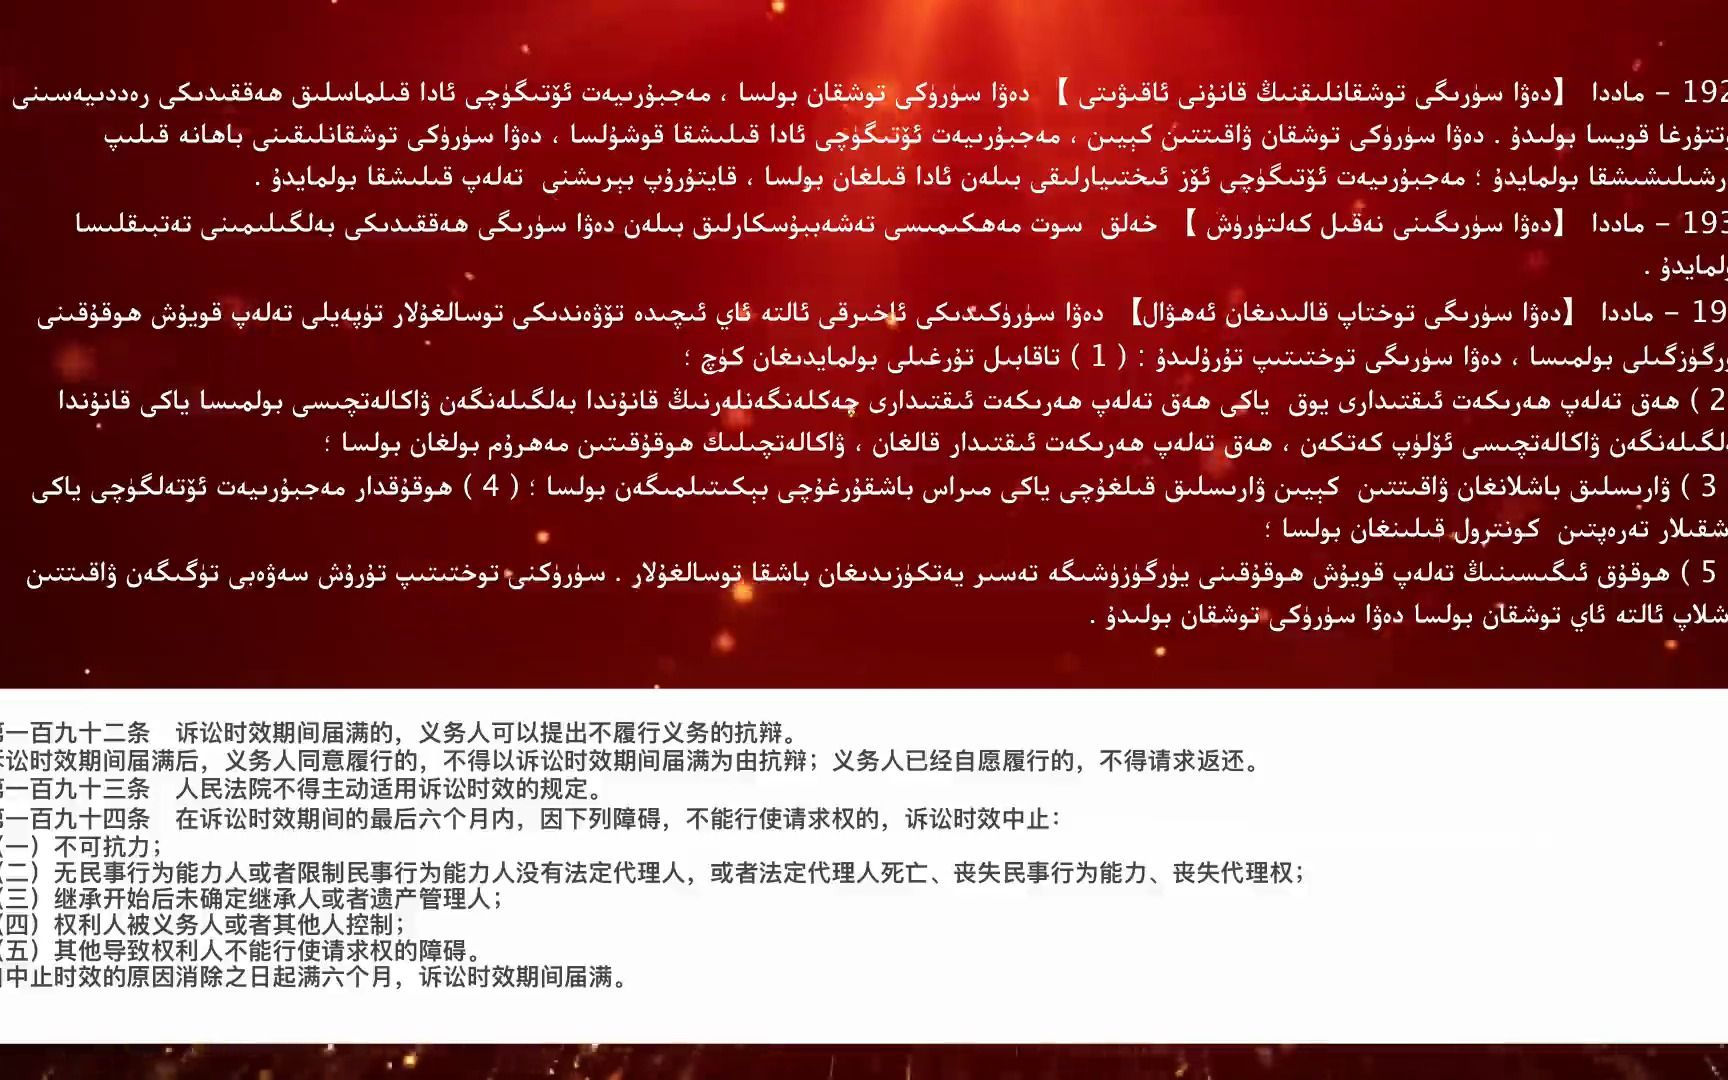 中华人民共和国 民法典维吾尔语版 第九章 诉讼时效    第十章期间计算 双语版